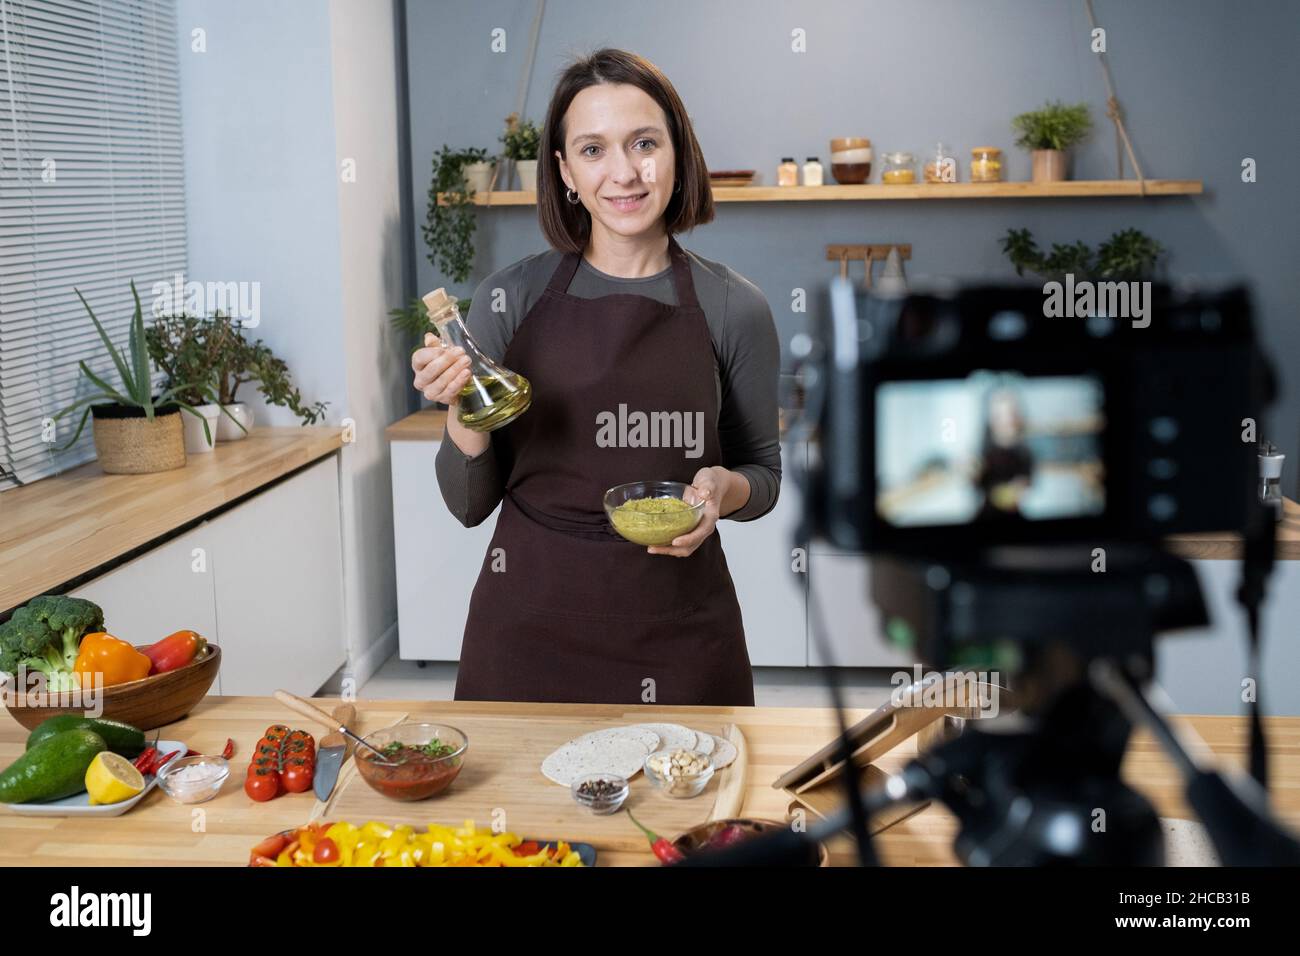 Junge Frau mit einer Flasche Olivenöl und einer Schüssel mit Gewürzen, die während des Masterclasses für das Online-Publikum am Küchentisch steht Stockfoto